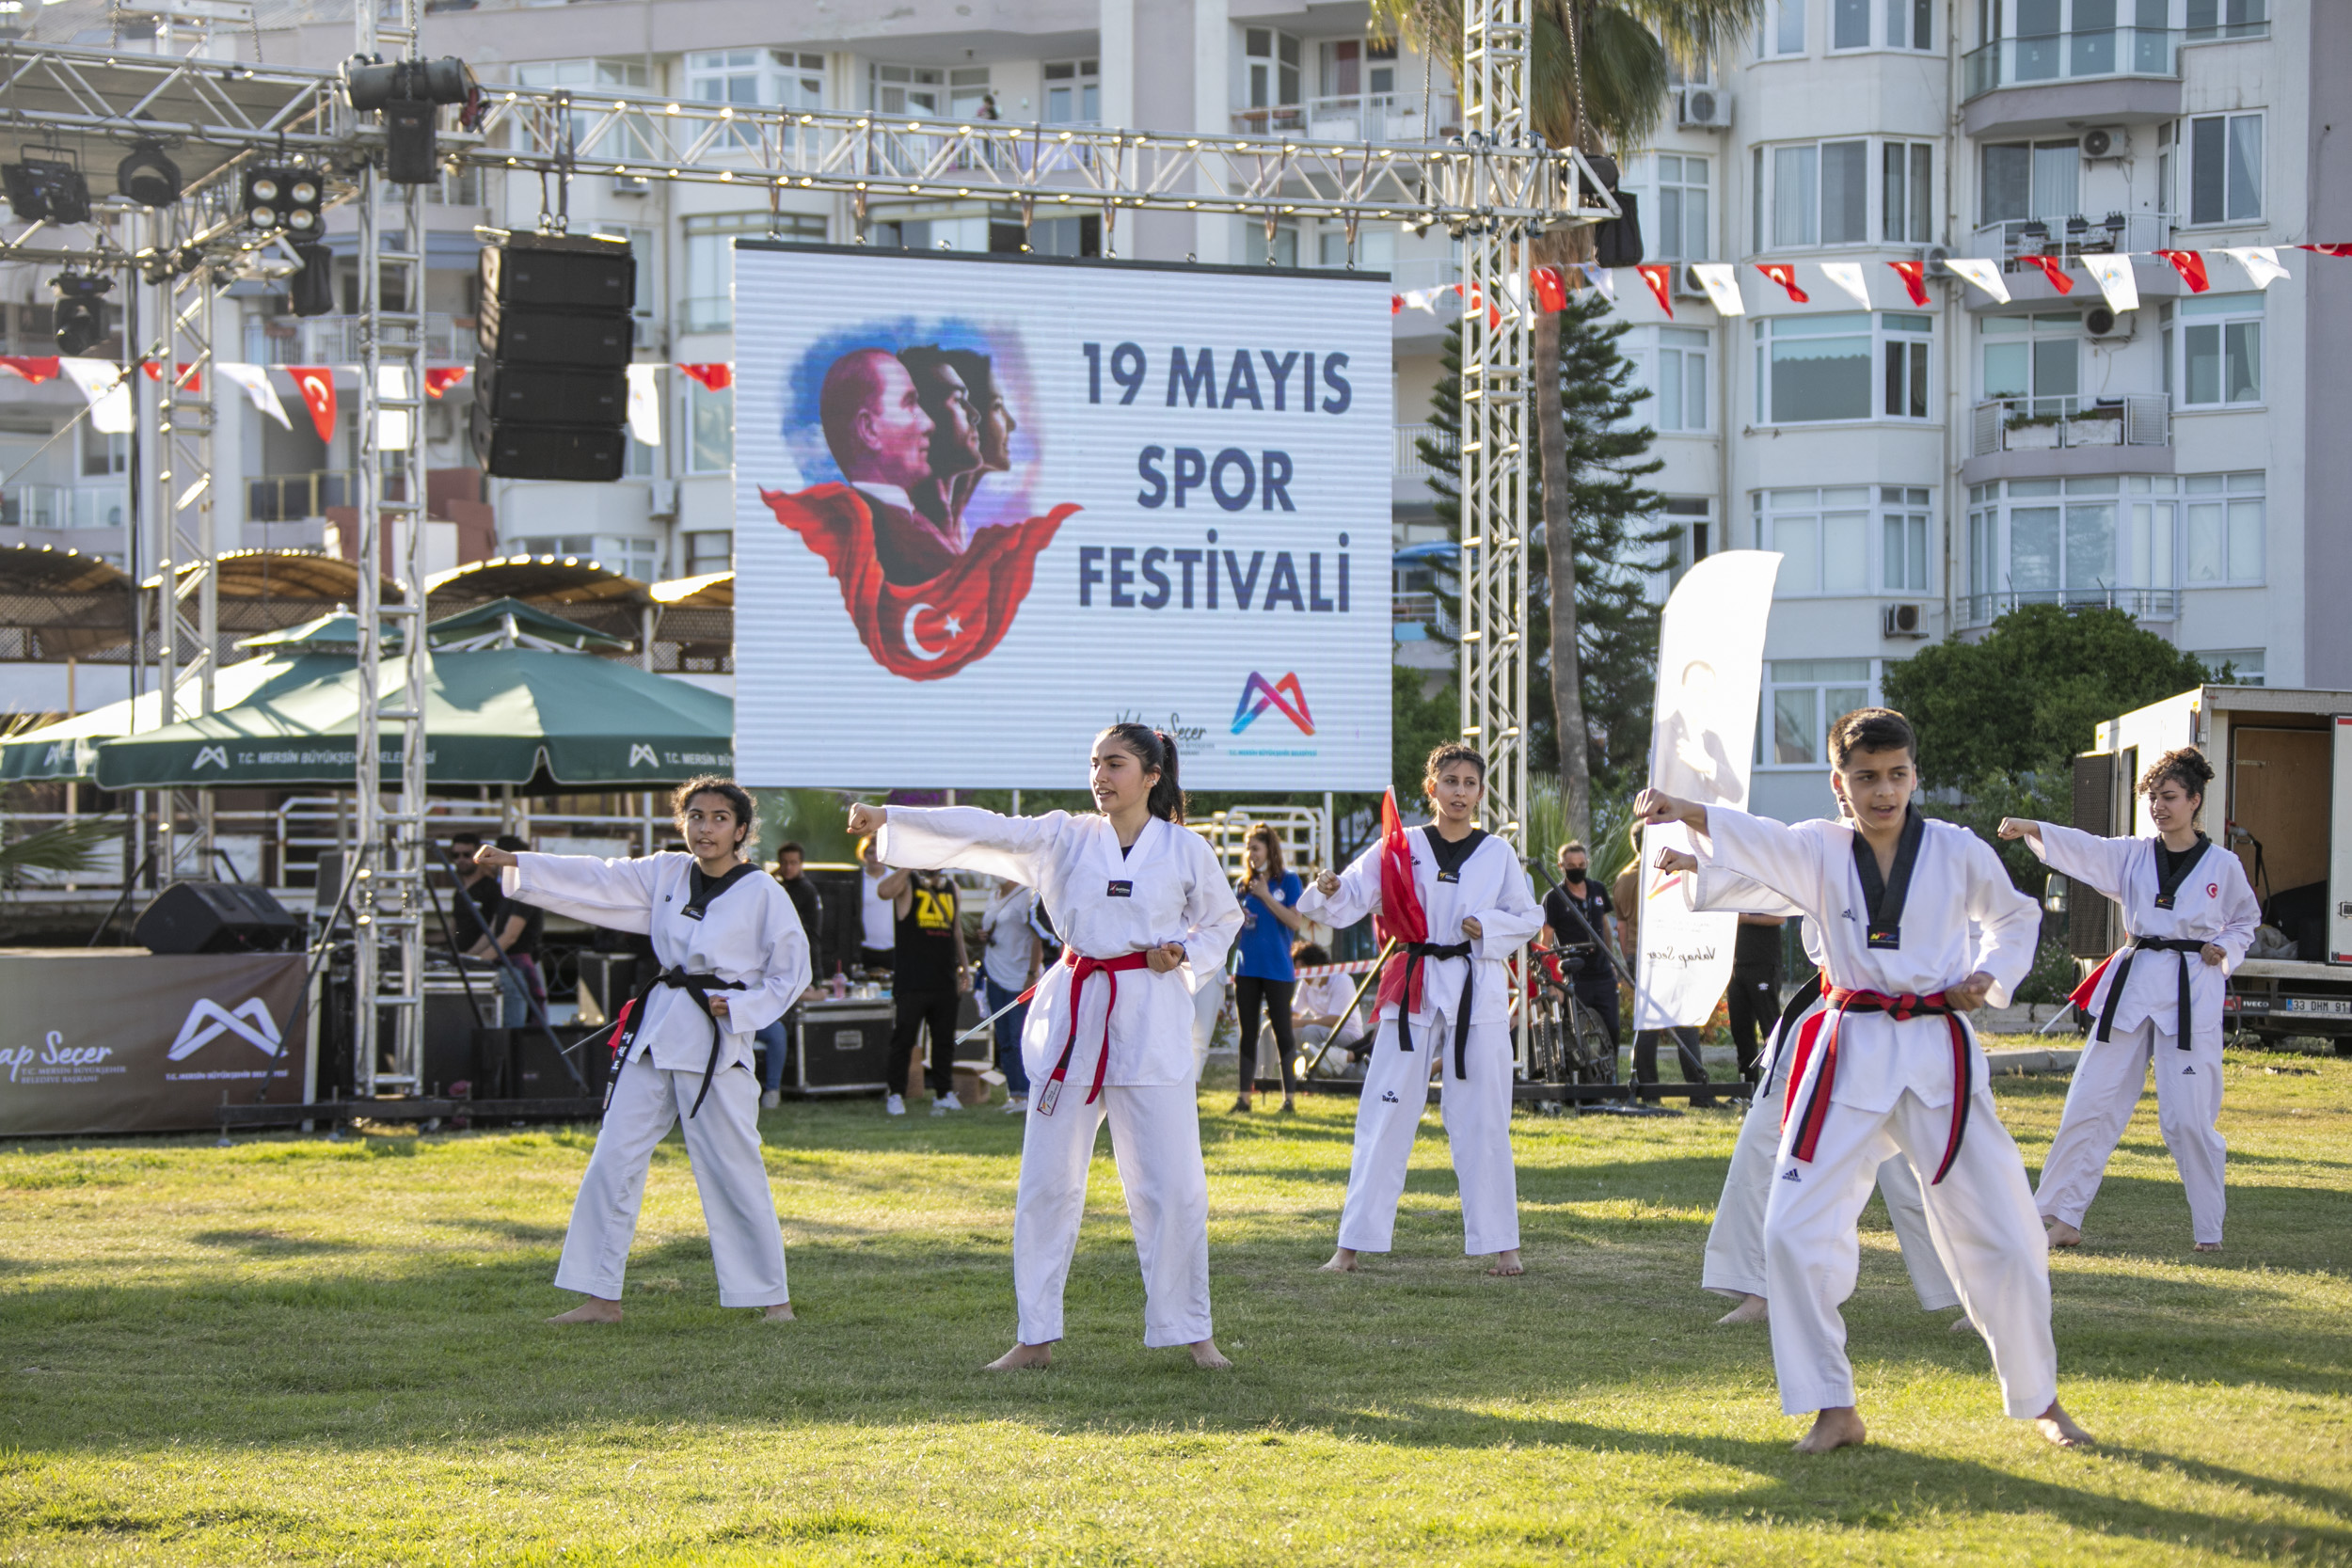  Mersin’de 19 Mayıs’a Özel Spor Festivali Düzenleniyor